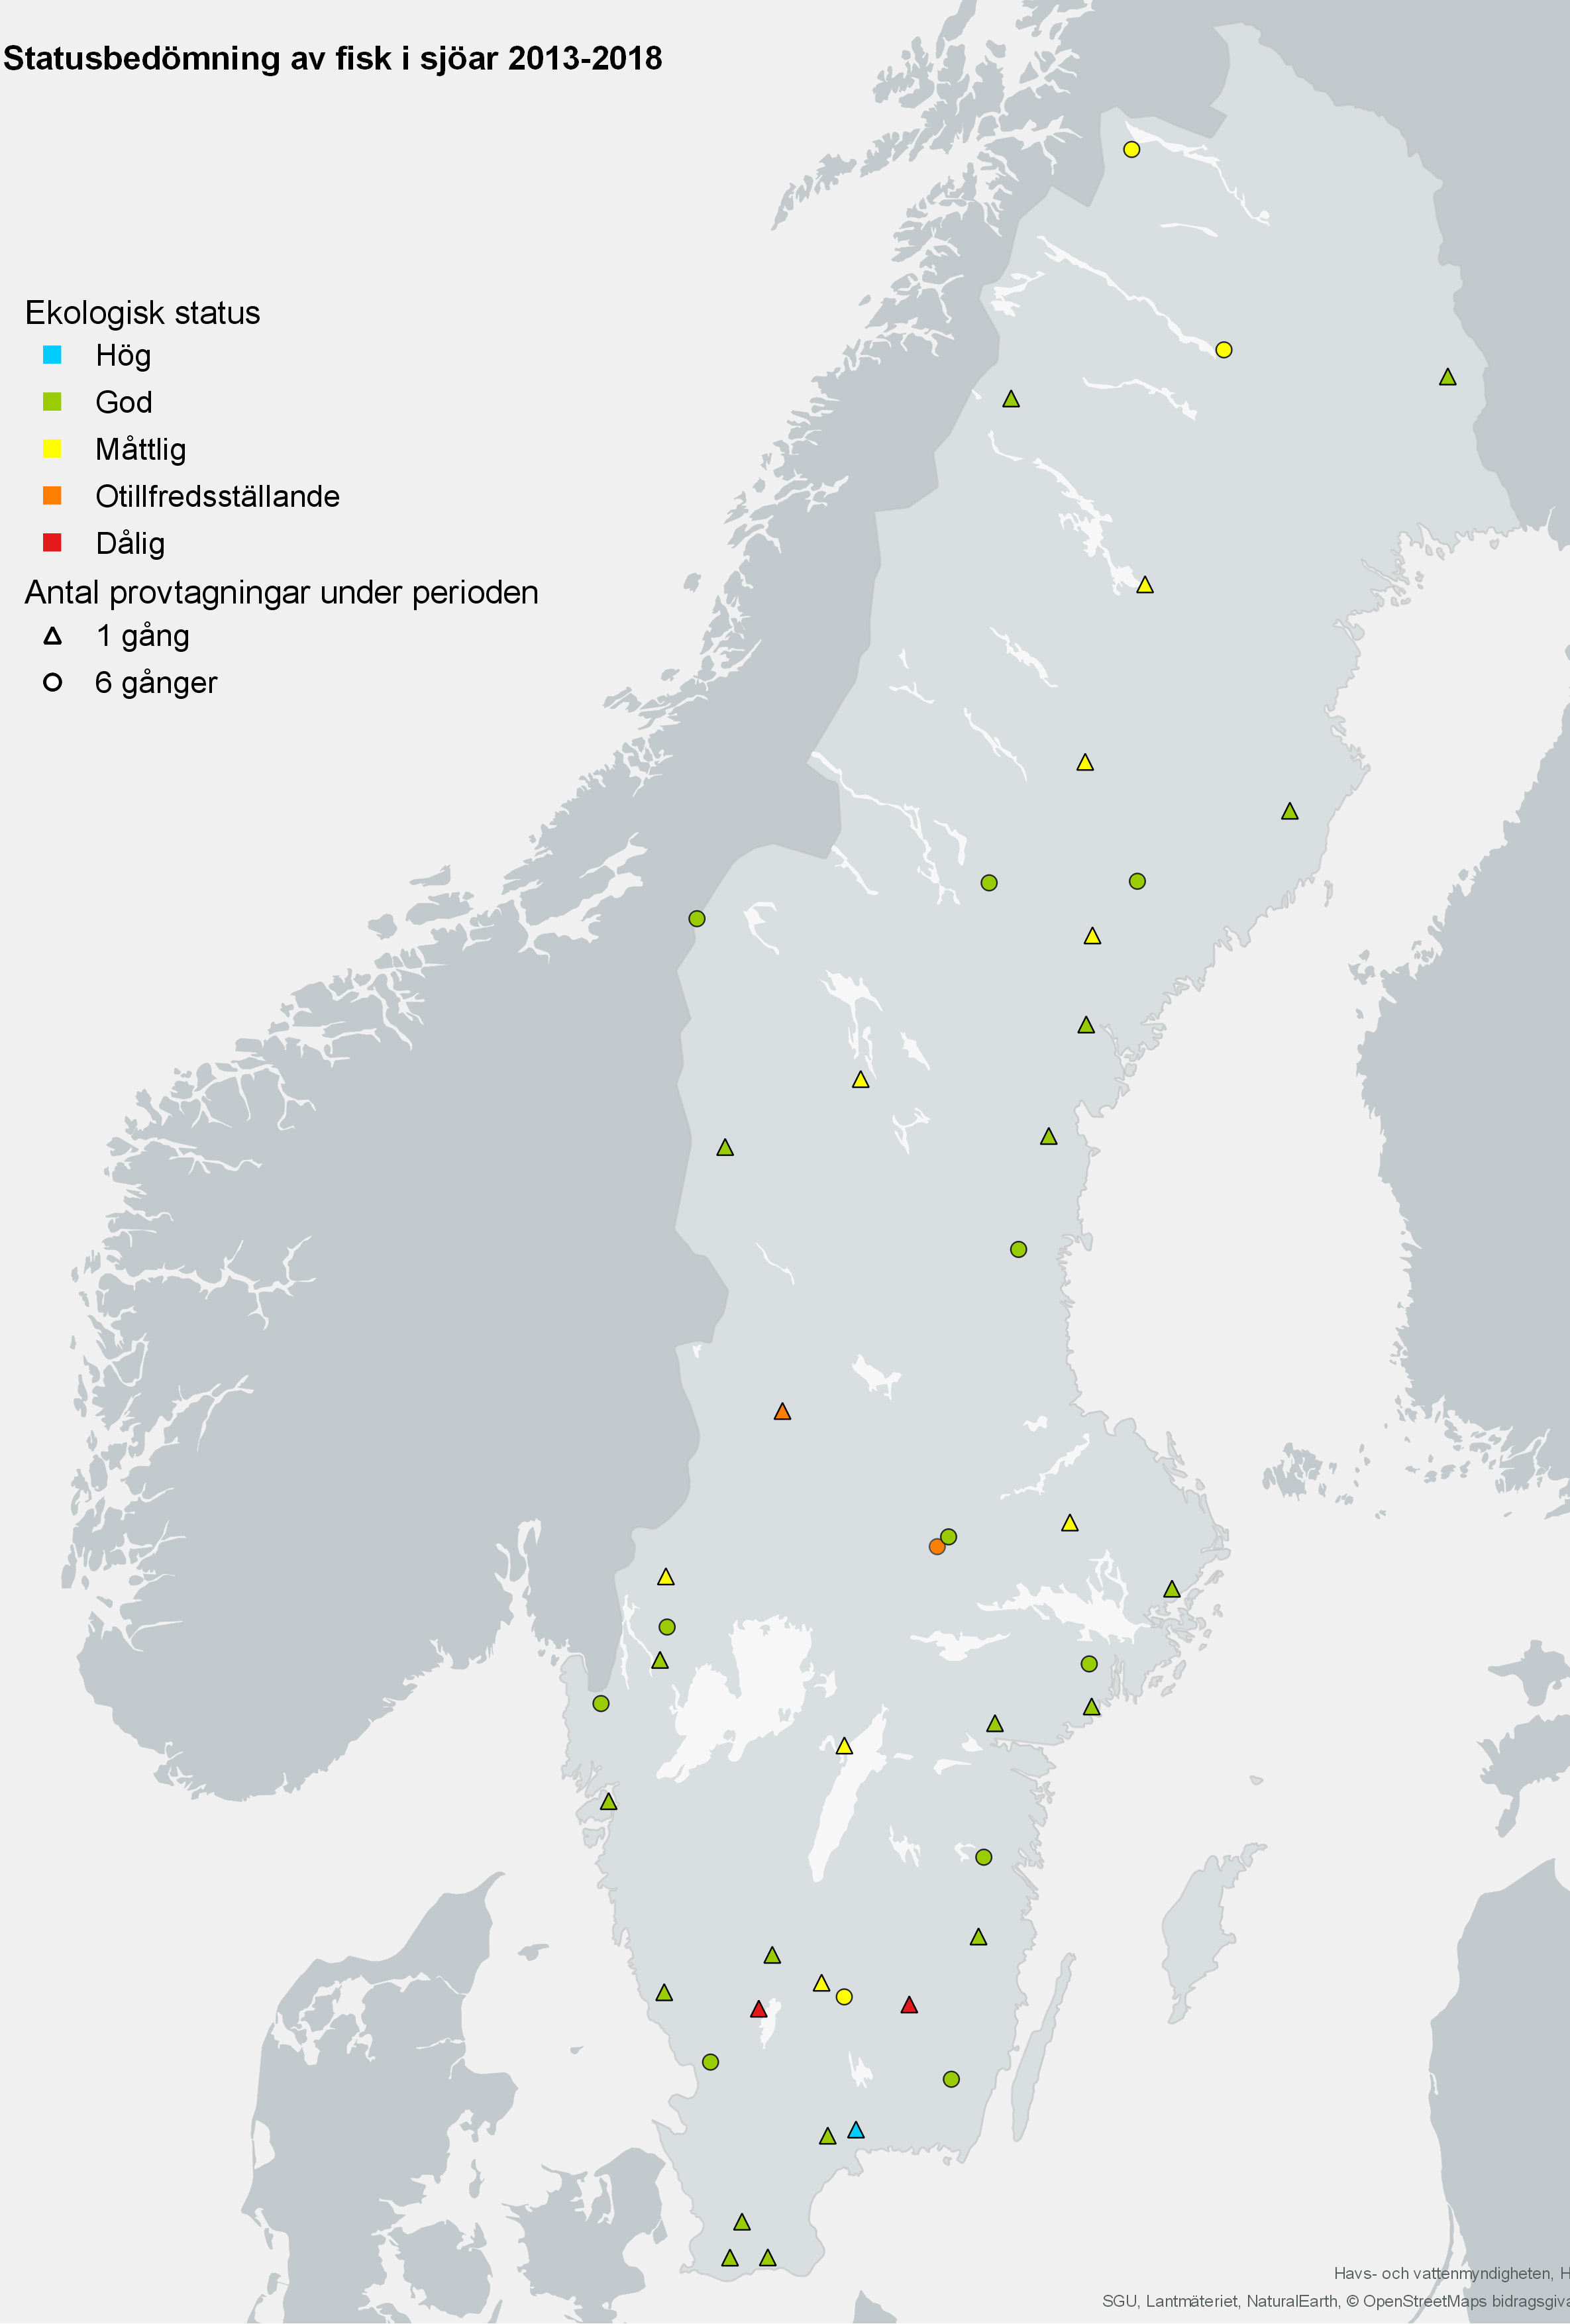 status i sjöar avseende fisk 2013-2018. karta.illustration